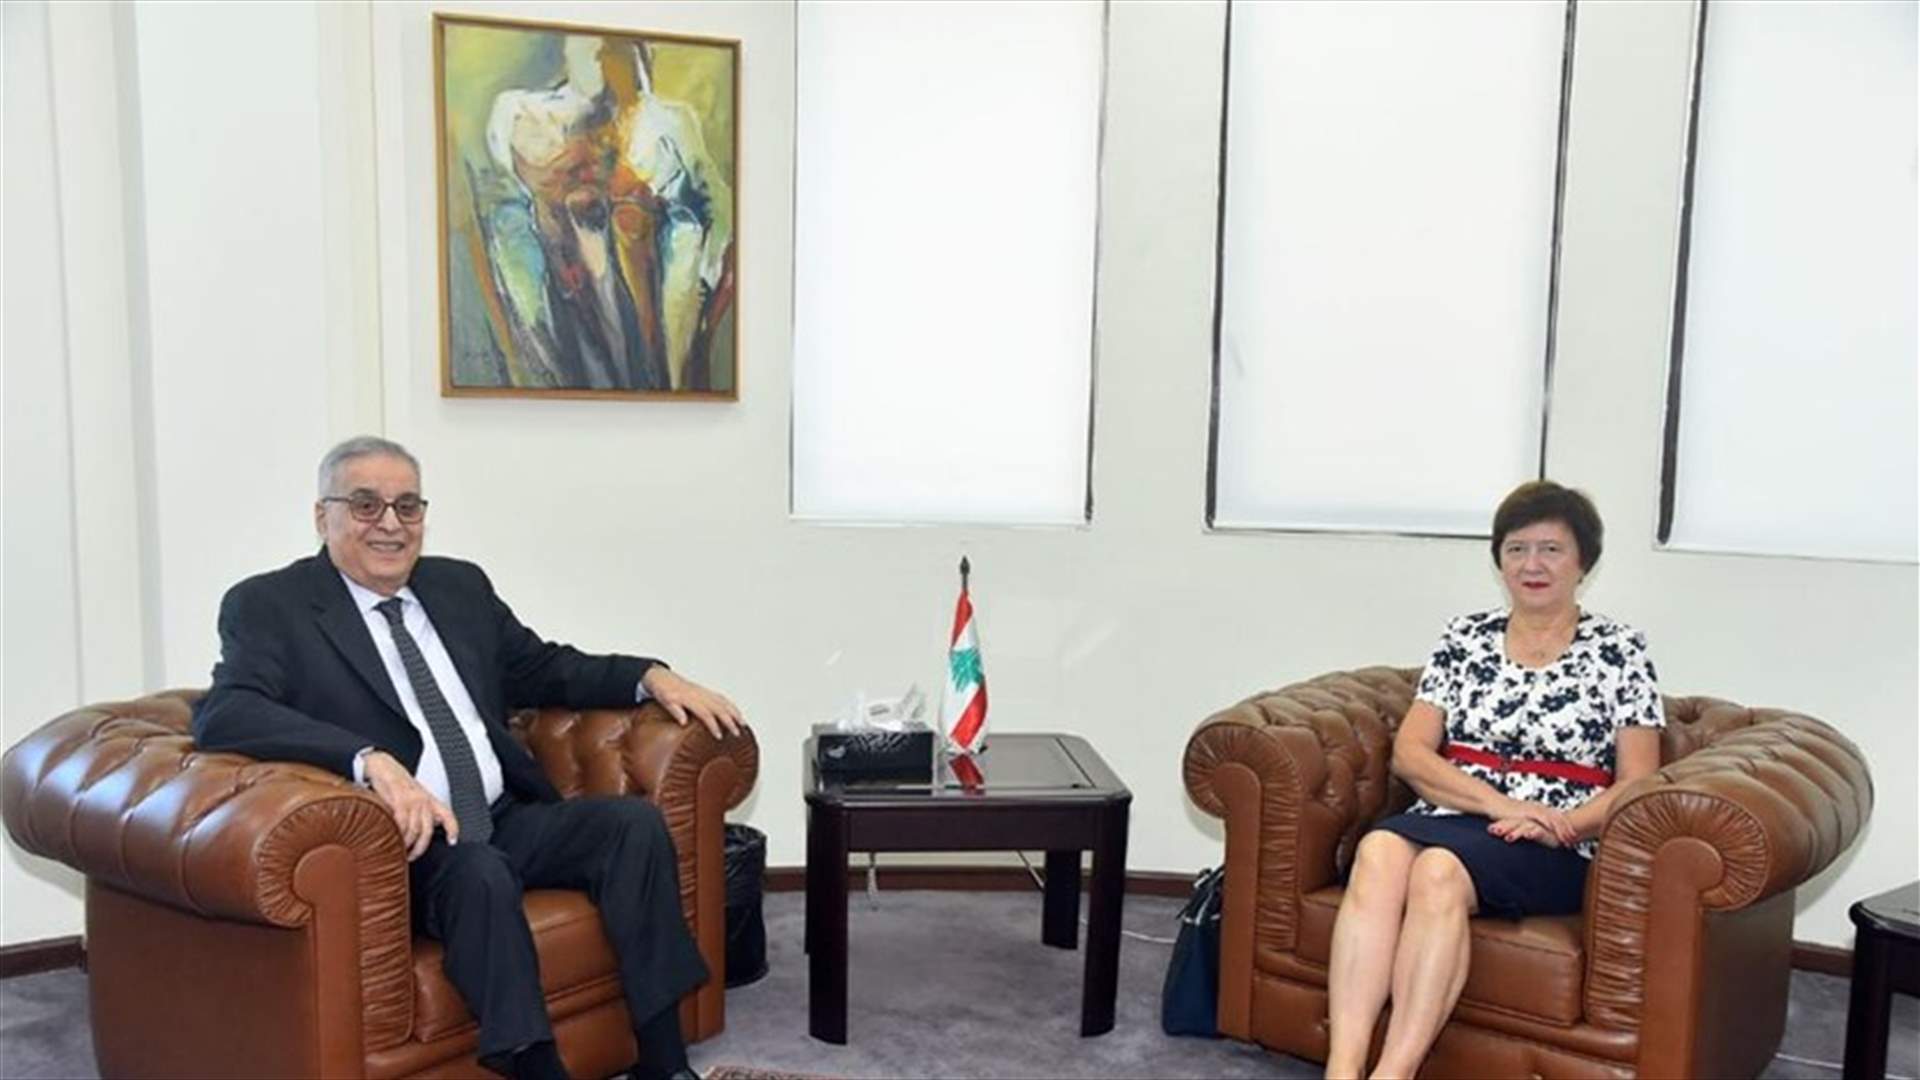 Bou habib meets US Ambassador Shea, UN Special Coordinator Wronecka